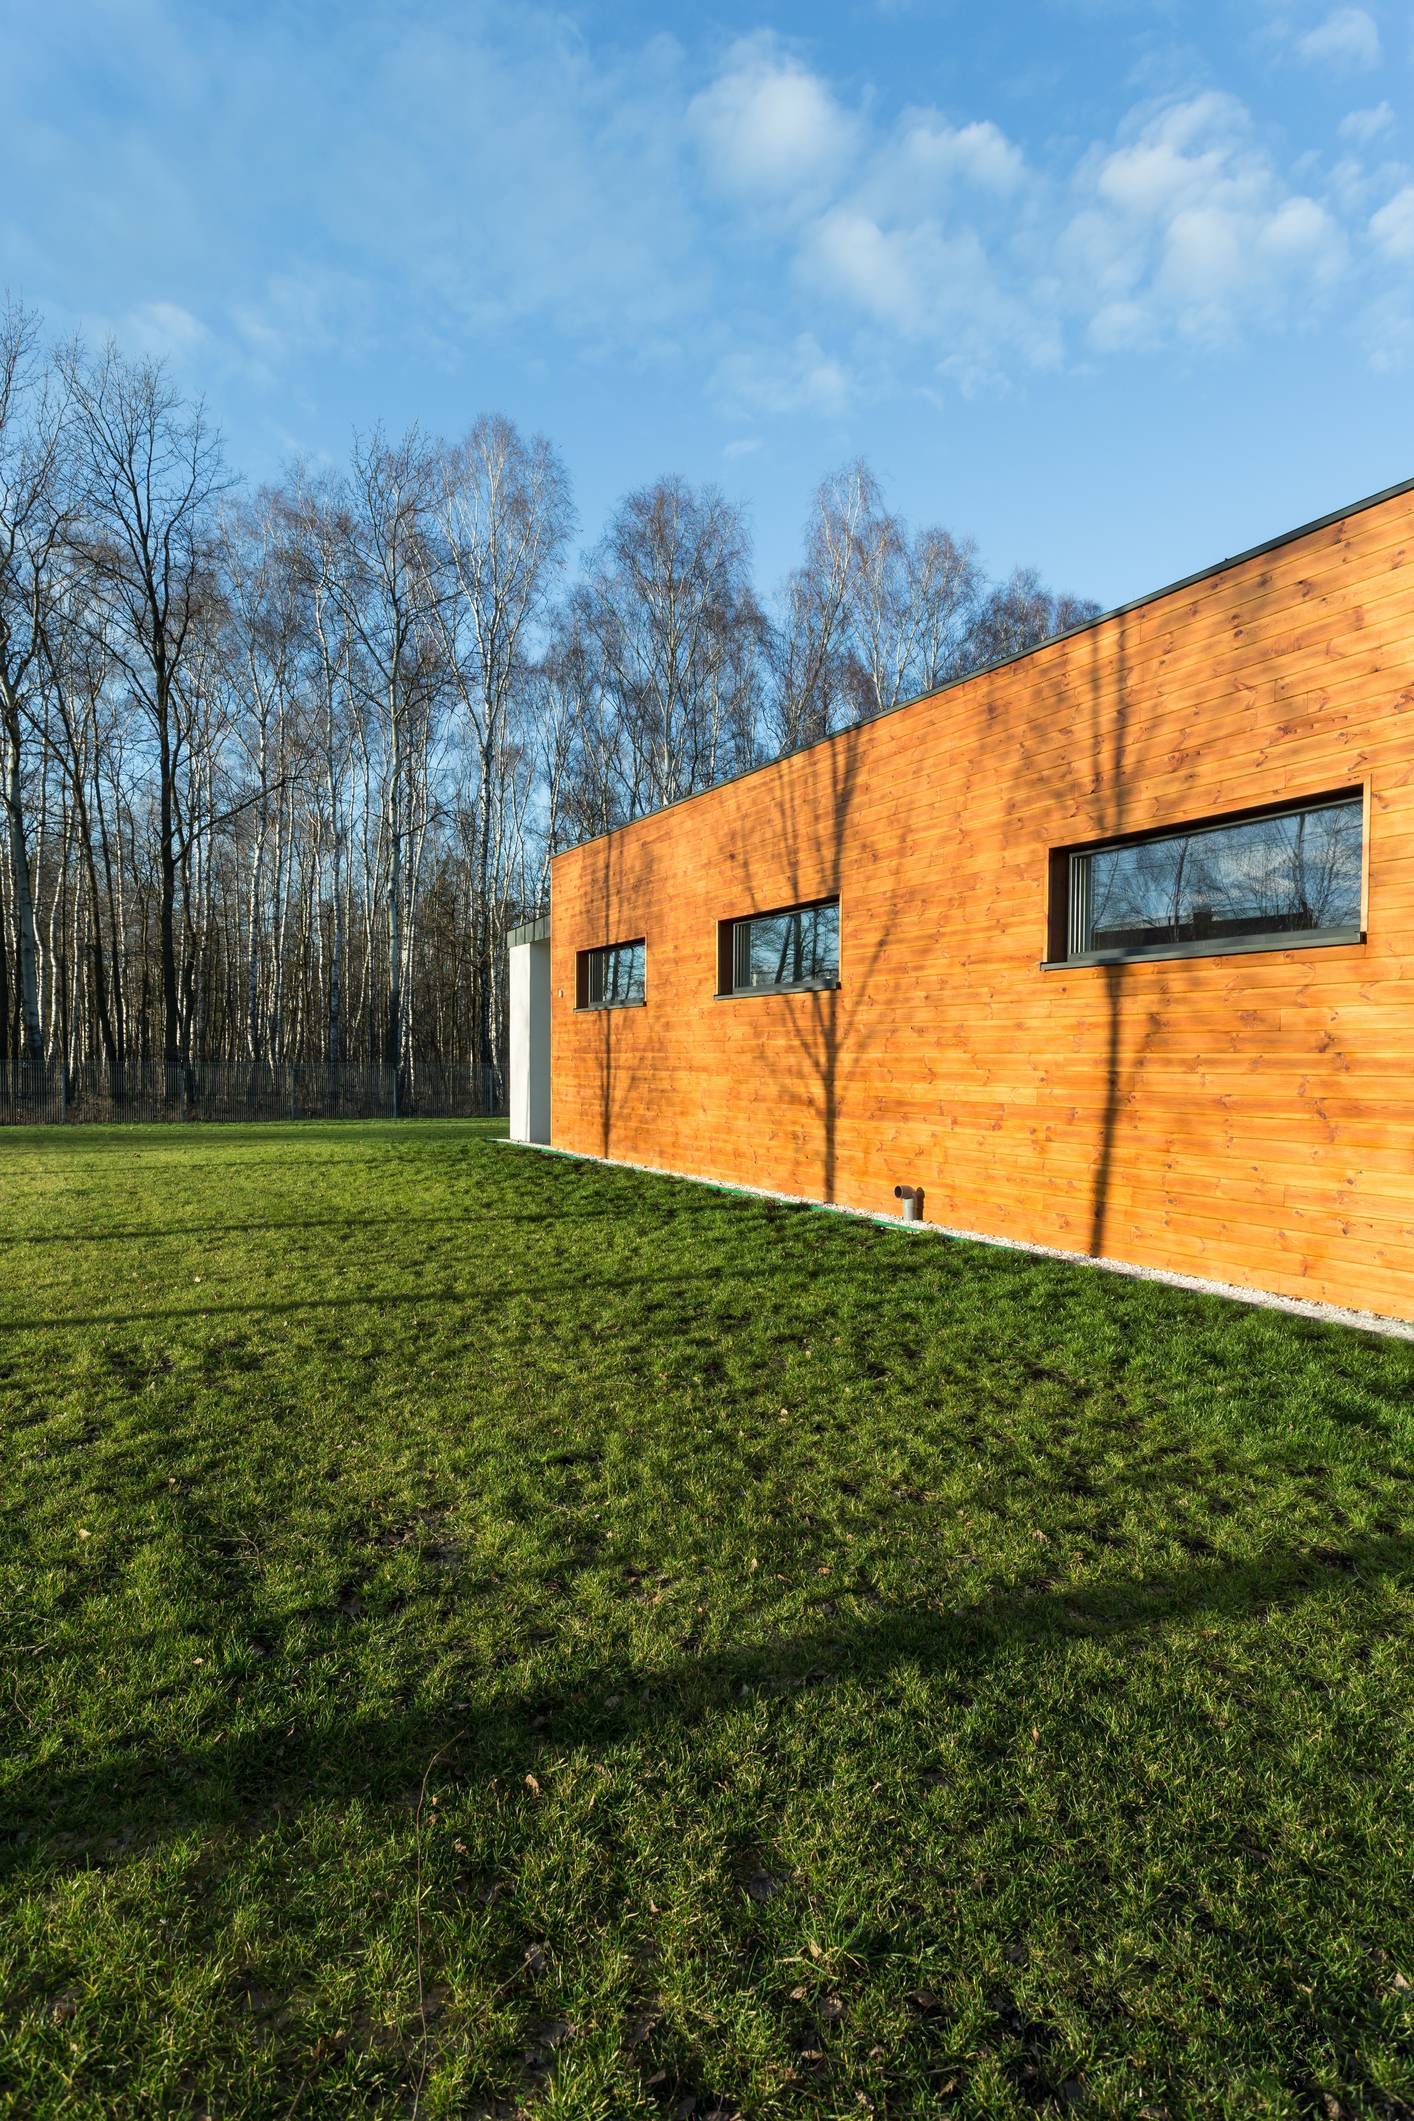 maison passive, construction en bois, isolation thermique, performances énergétiques